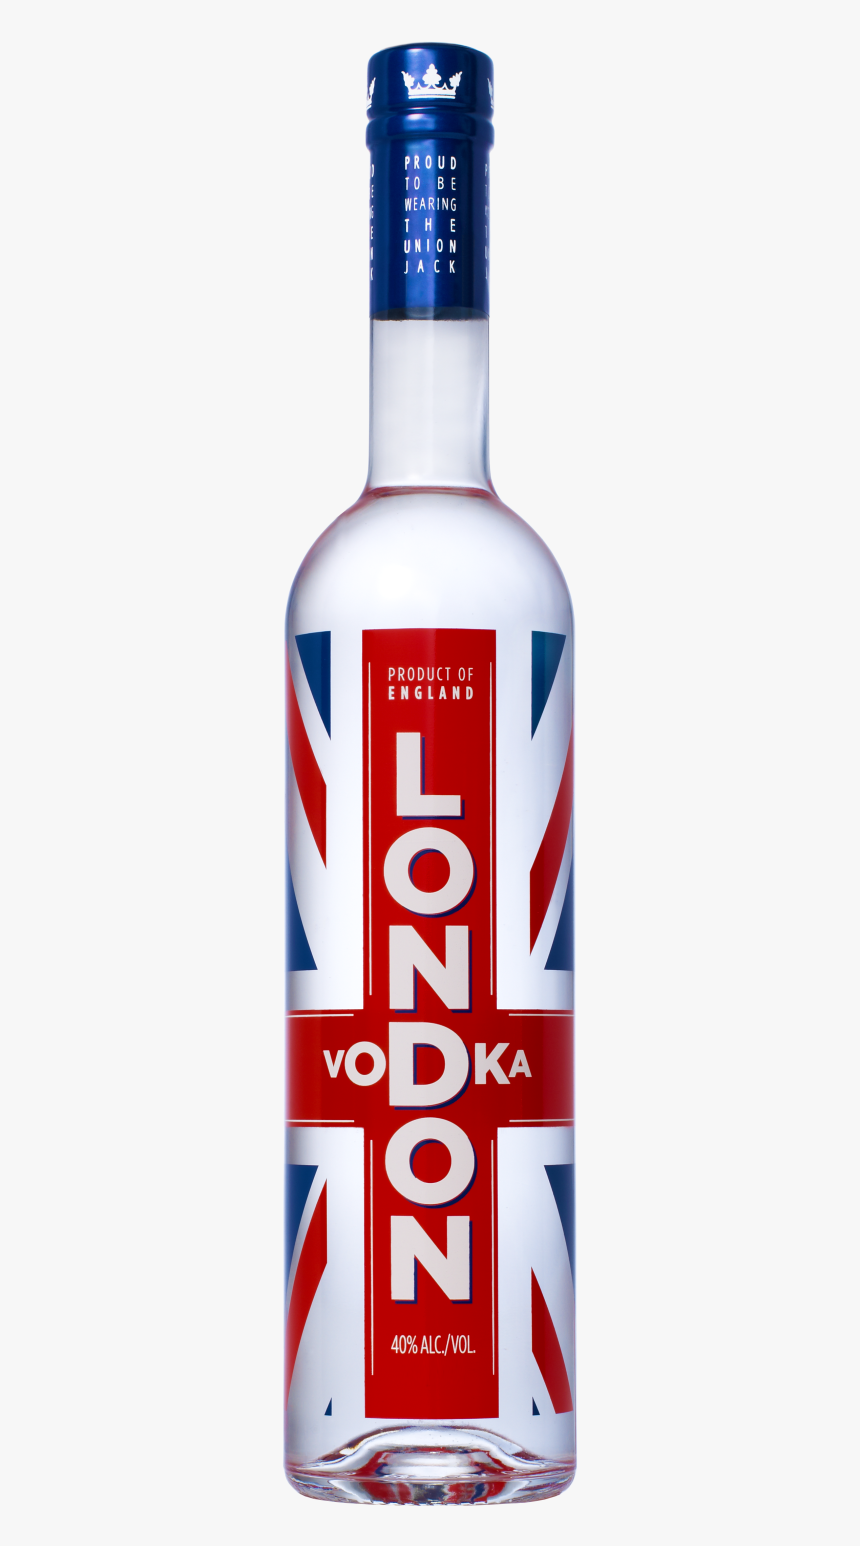 Bottle Background Vodka Transparent"
								 Title="bottle - London Vodka, HD Png Download, Free Download